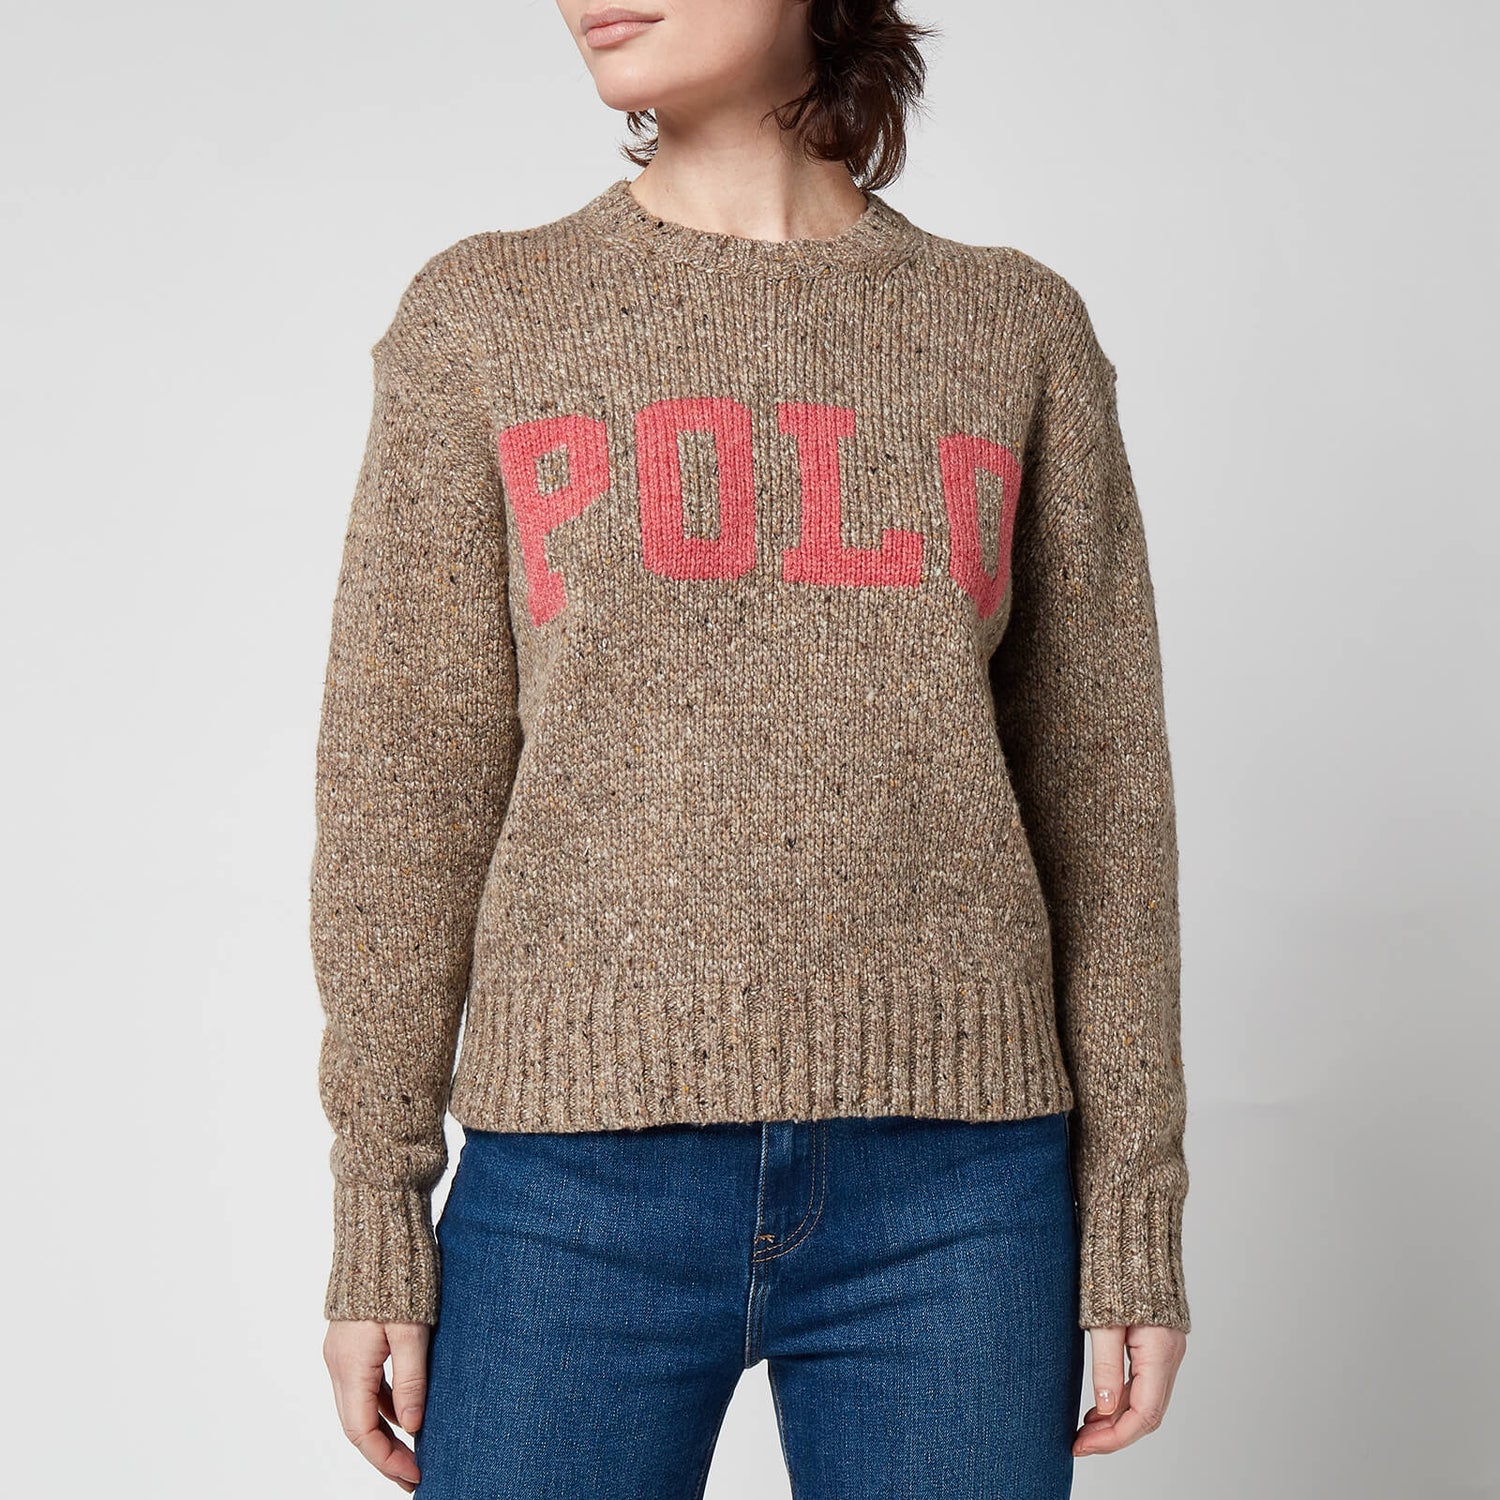 Polo Ralph Lauren Women's Classic Polo Sweatshirt - Tan/Pink Multi - XS